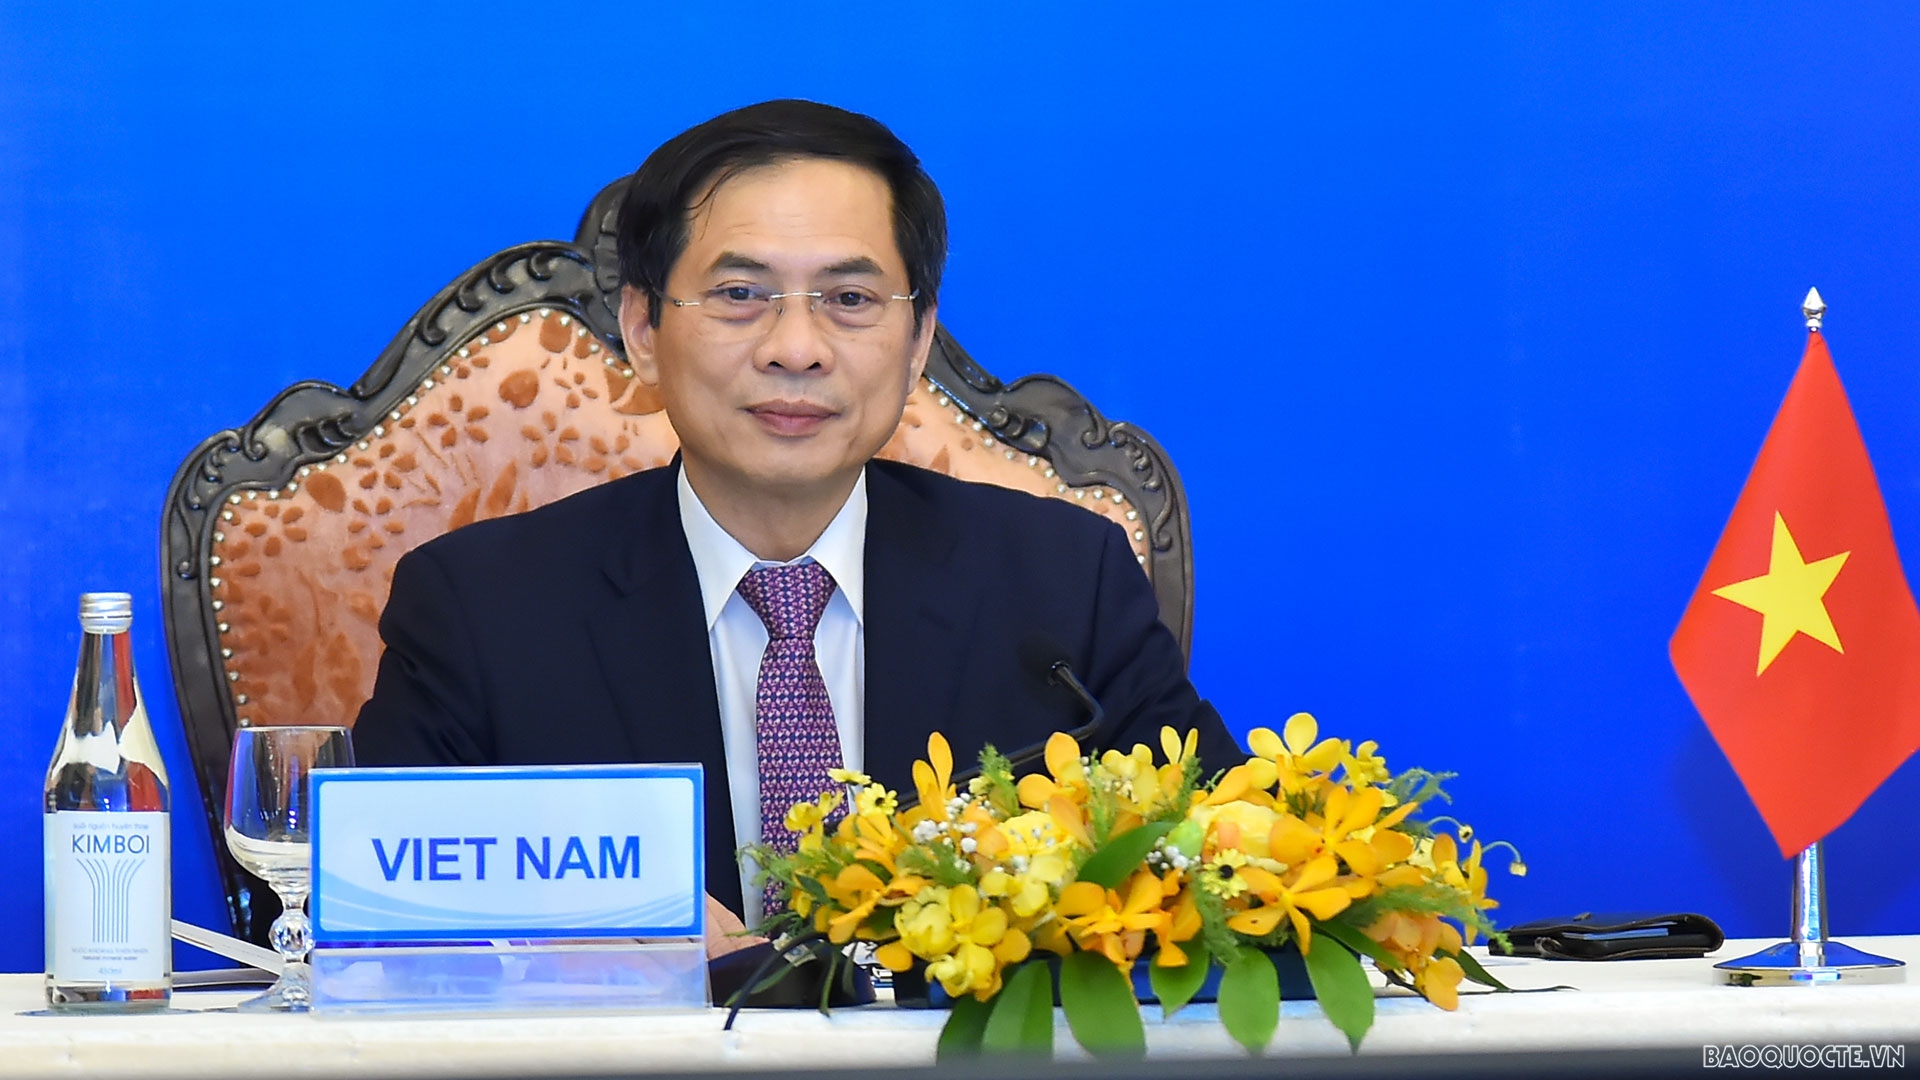 Bộ trưởng Ngoại giao Bùi Thanh Sơn tham dự và phát biểu tại Hội nghị Bộ trưởng hợp tác Mekong-Nhật Bản lần thứ 14 theo hình thức trực tuyến.  (Ảnh: Tuấn Anh)